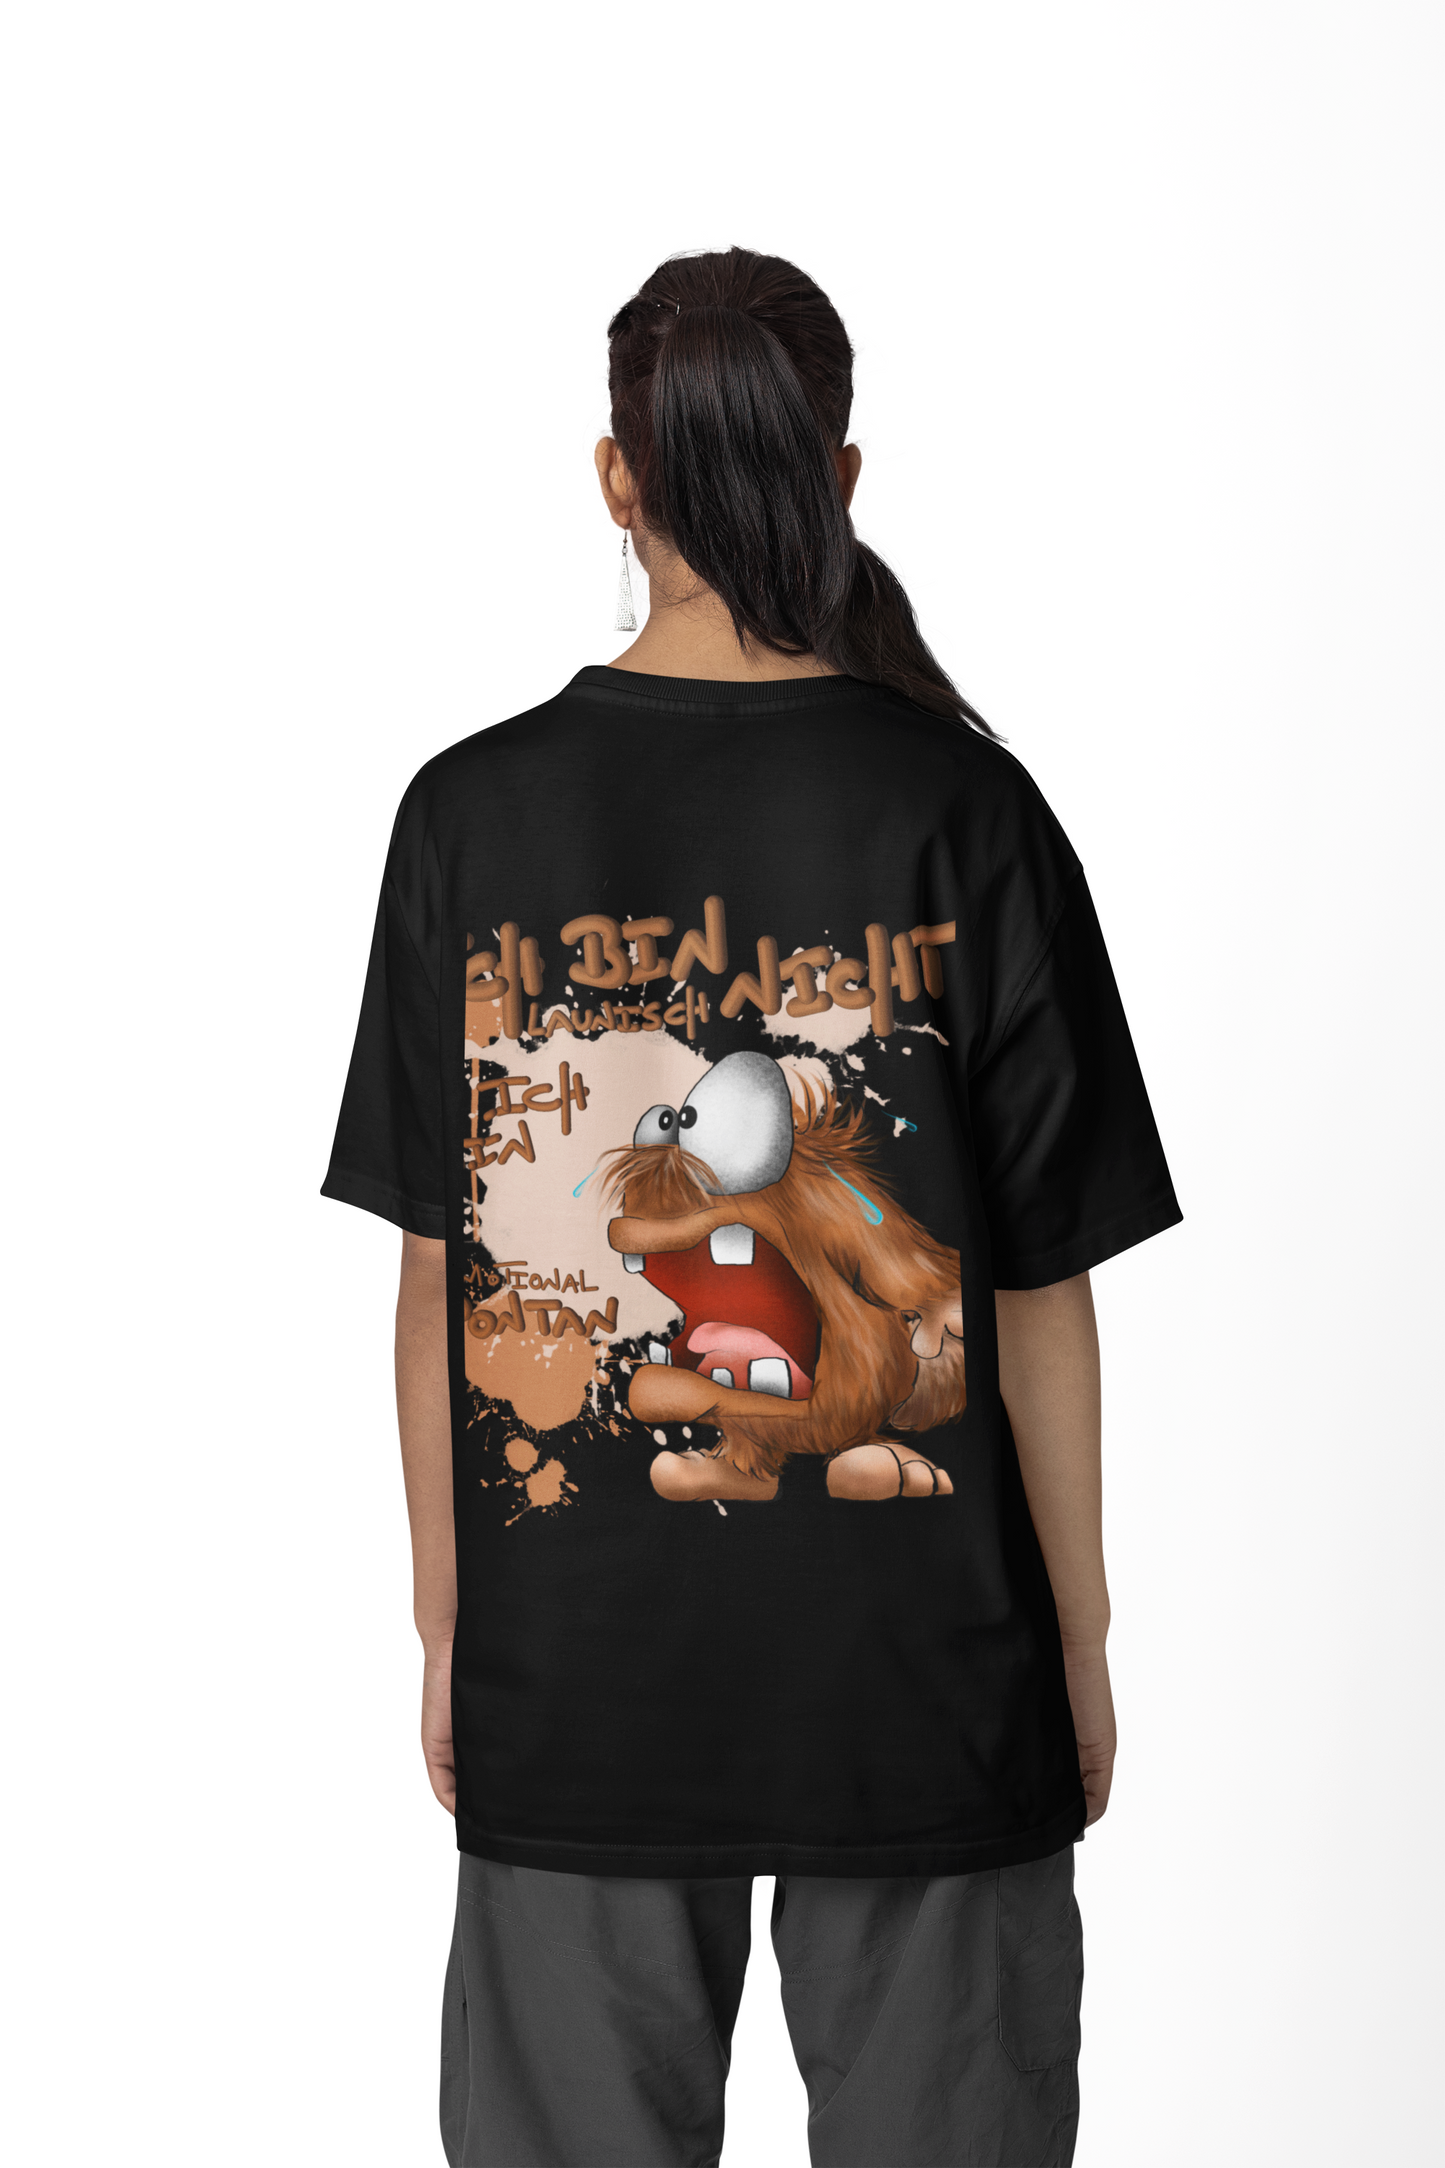 T-Shirt mit XXL Druck Kruegerhausdesign Monster in schwarz, wähle dein Motiv siehe Bilder